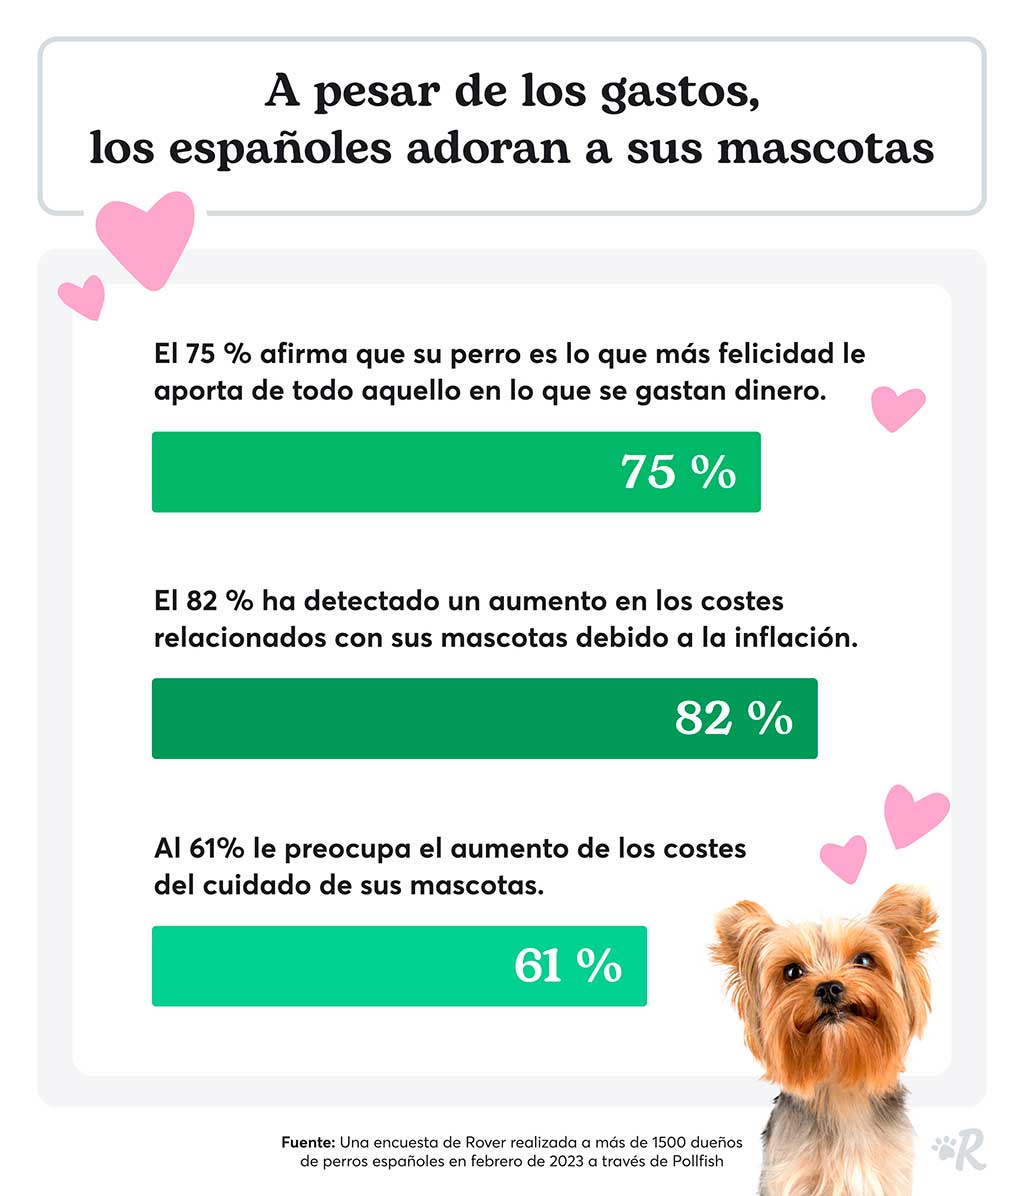 El coste de tener mascotas: El 82% de los españoles ha experimentado un aumento del gasto en sus mascotas debido a la inflación.